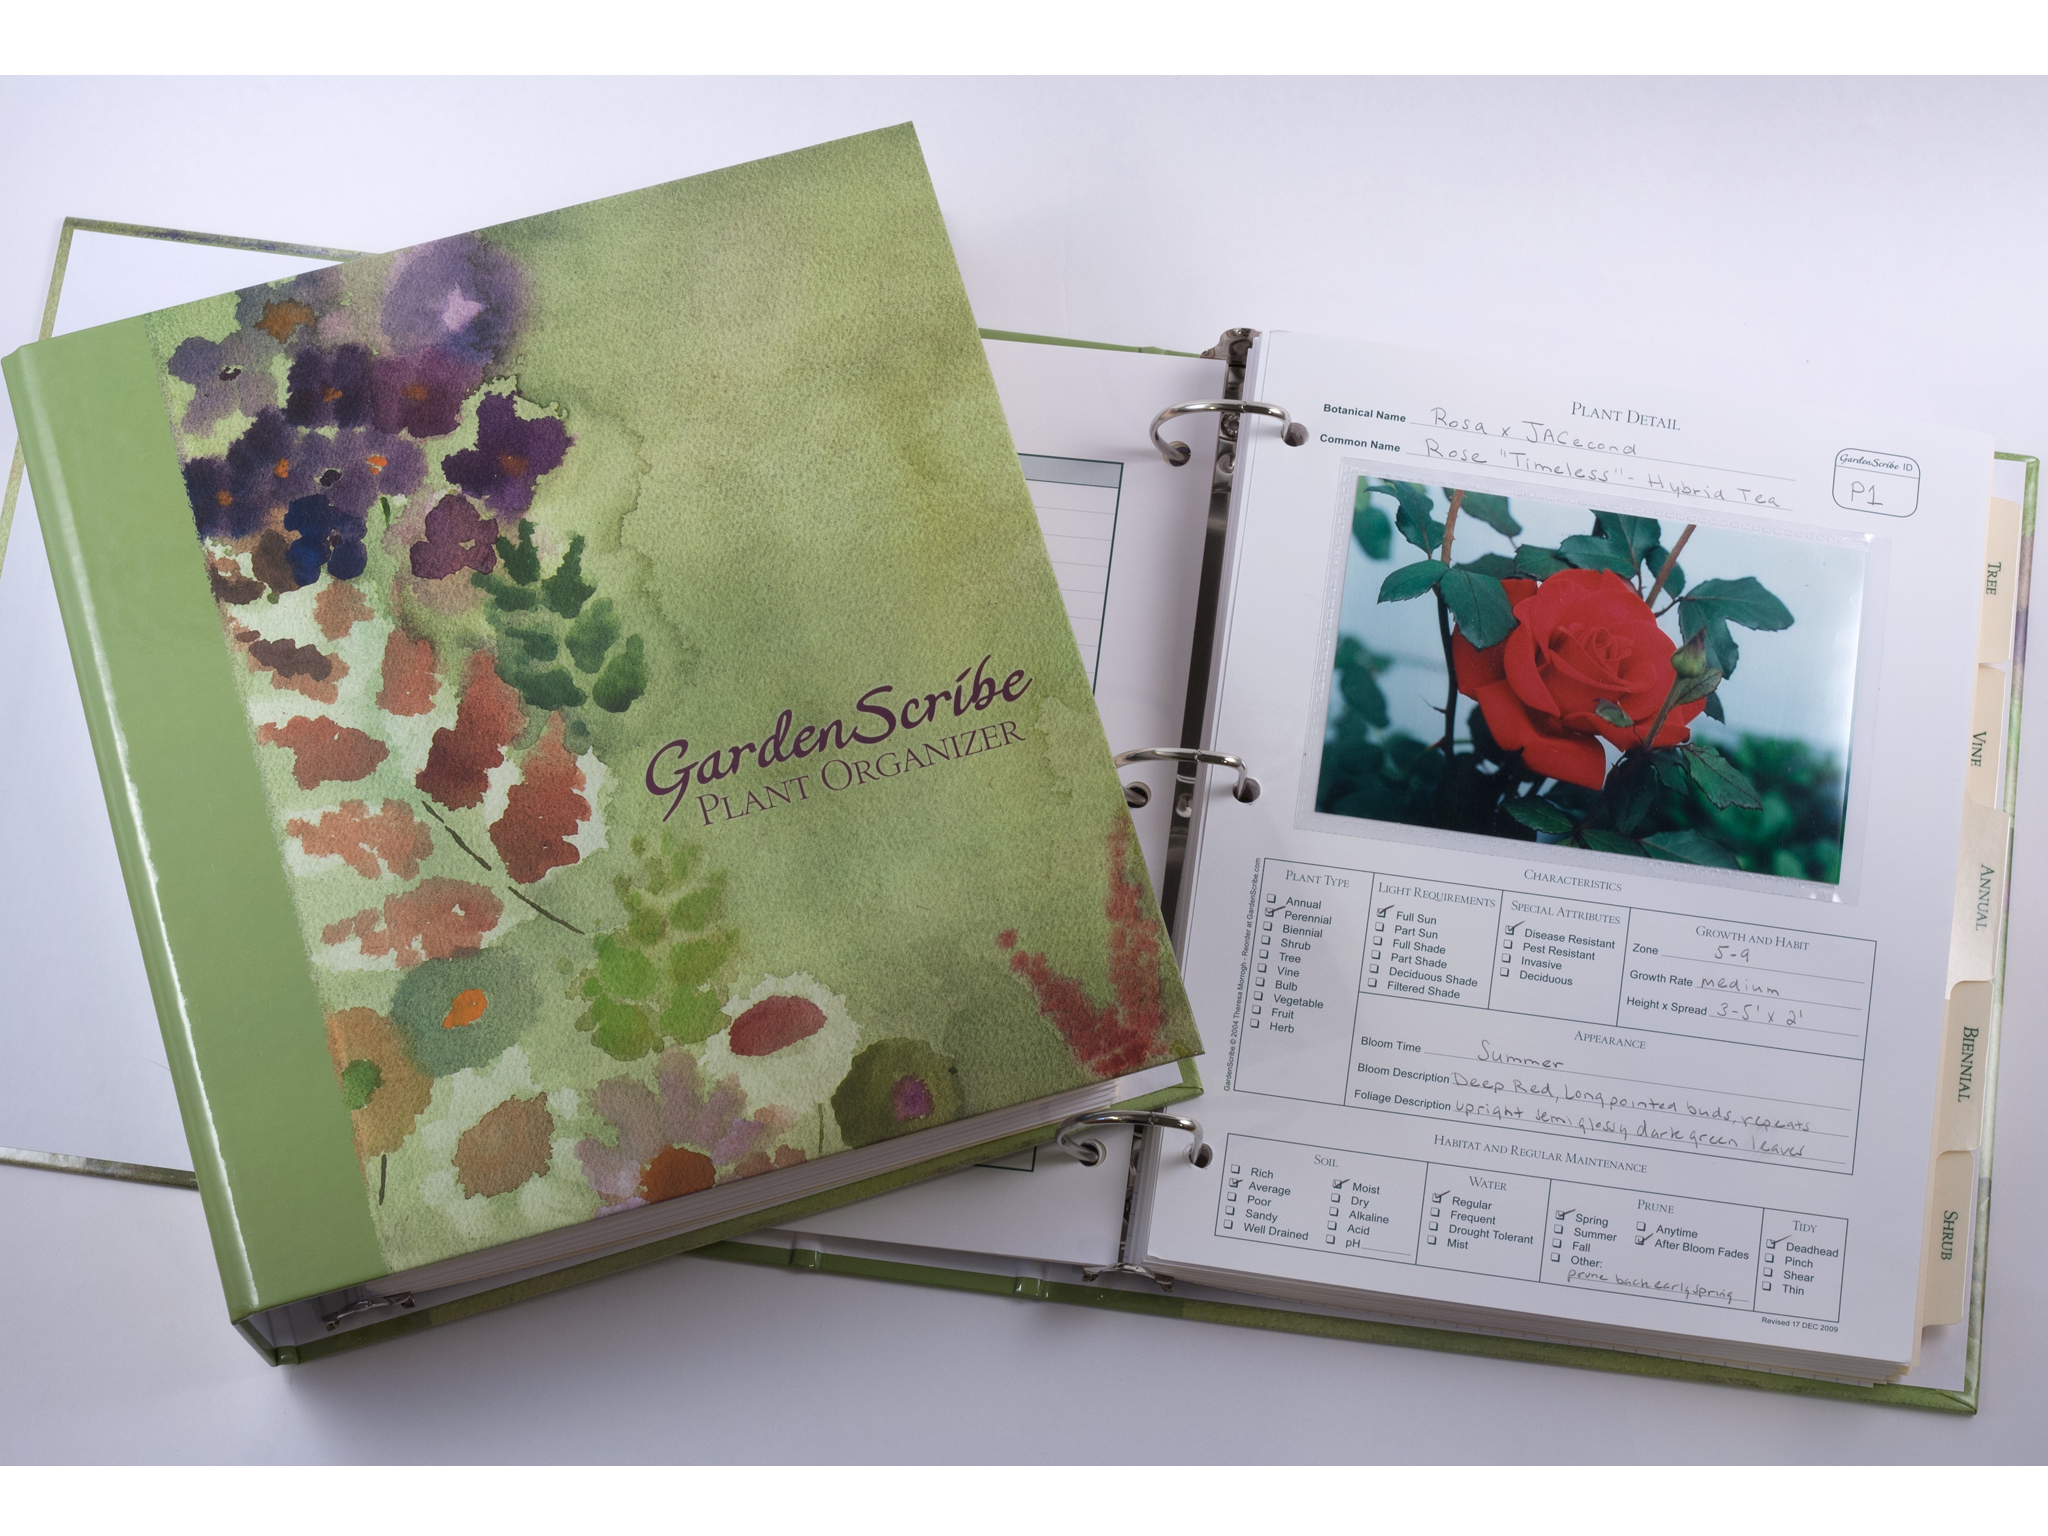 A beautiful handmade garden journal